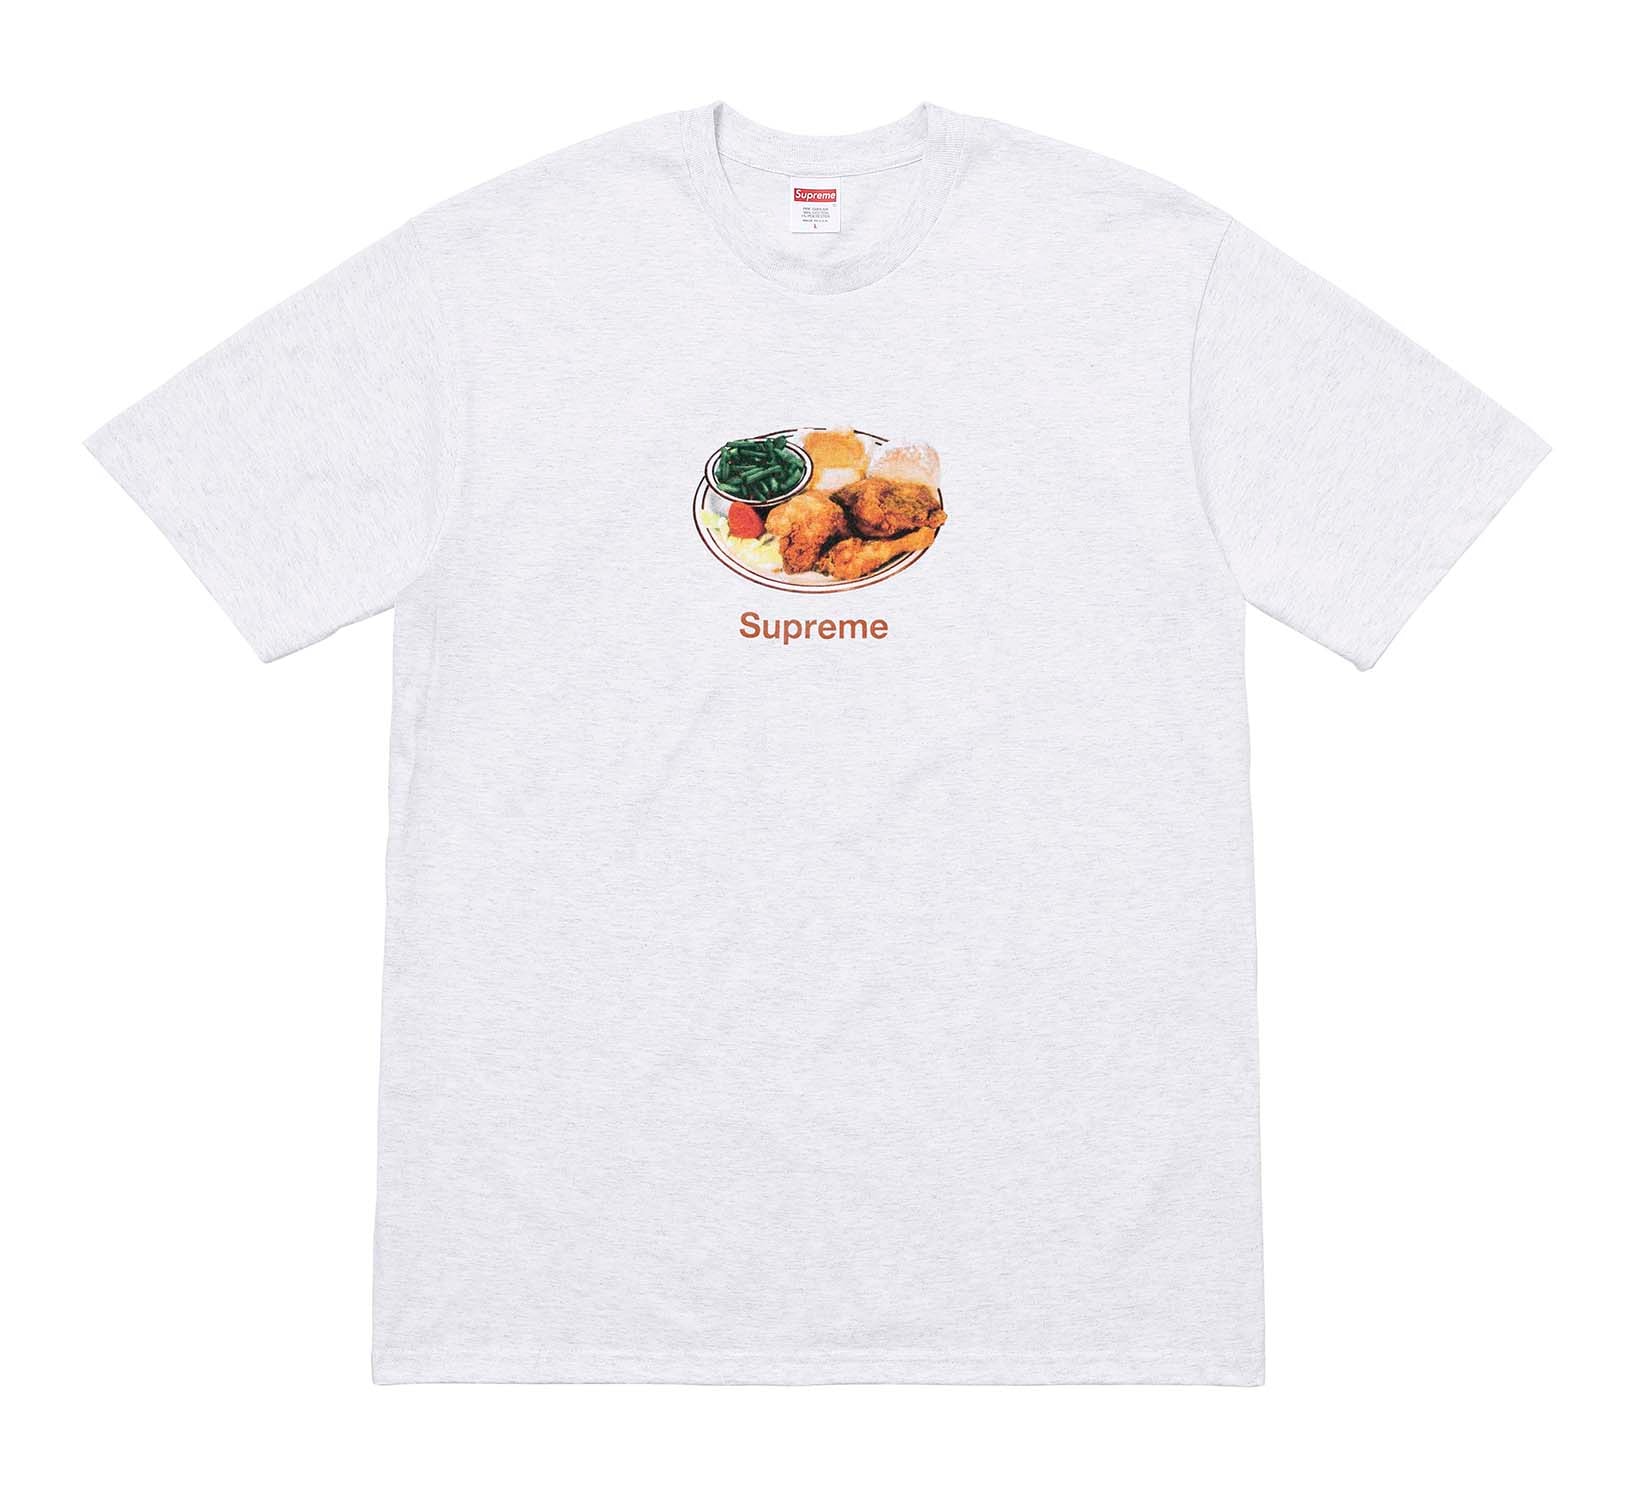 Supreme 2018年春夏コレクション Tシャツ 今は亡きProdigyに捧げるトリビュートTシャツに加えて、ポール・セザンヌの作品『トランプをする人々』をフィーチャーしたものも 来る2月17日（土）、遂に〈Supreme（シュプリーム）〉の2018年春夏コレクションの火蓋が切られる。今季登場するTシャツも、非常に濃密なラインアップに。噂によると、“Chicken Dinner Tee”と呼ばれているチキン料理をフィーチャーしたシュールなもの、そして今は亡きMobb Deep（モブ・ディープ）のProdigy（プロディジー）に捧げるトリビュートTシャツは、#WEEK1に登場するとのこと。また、首裏に「fuck the world.」のメッセージを添え、胸元に小ぶりなブランドロゴを配置したシンプルなアイテムや、クラゲプリント、さらにはフランズ人画家Paul Cézanne（ポール・セザンヌ）の『トランプをする人々』をグラフィックとして採用したアートTシャツなども優先してカートインしたいところだ。  上のフォトギャラリーから各種Tシャツのデザインをチェックしたあとは、以下のルックブックとカテゴリー別のアイテム一覧にも目を通し、早めに購入の優先順位を決めておくのが得策だろう。